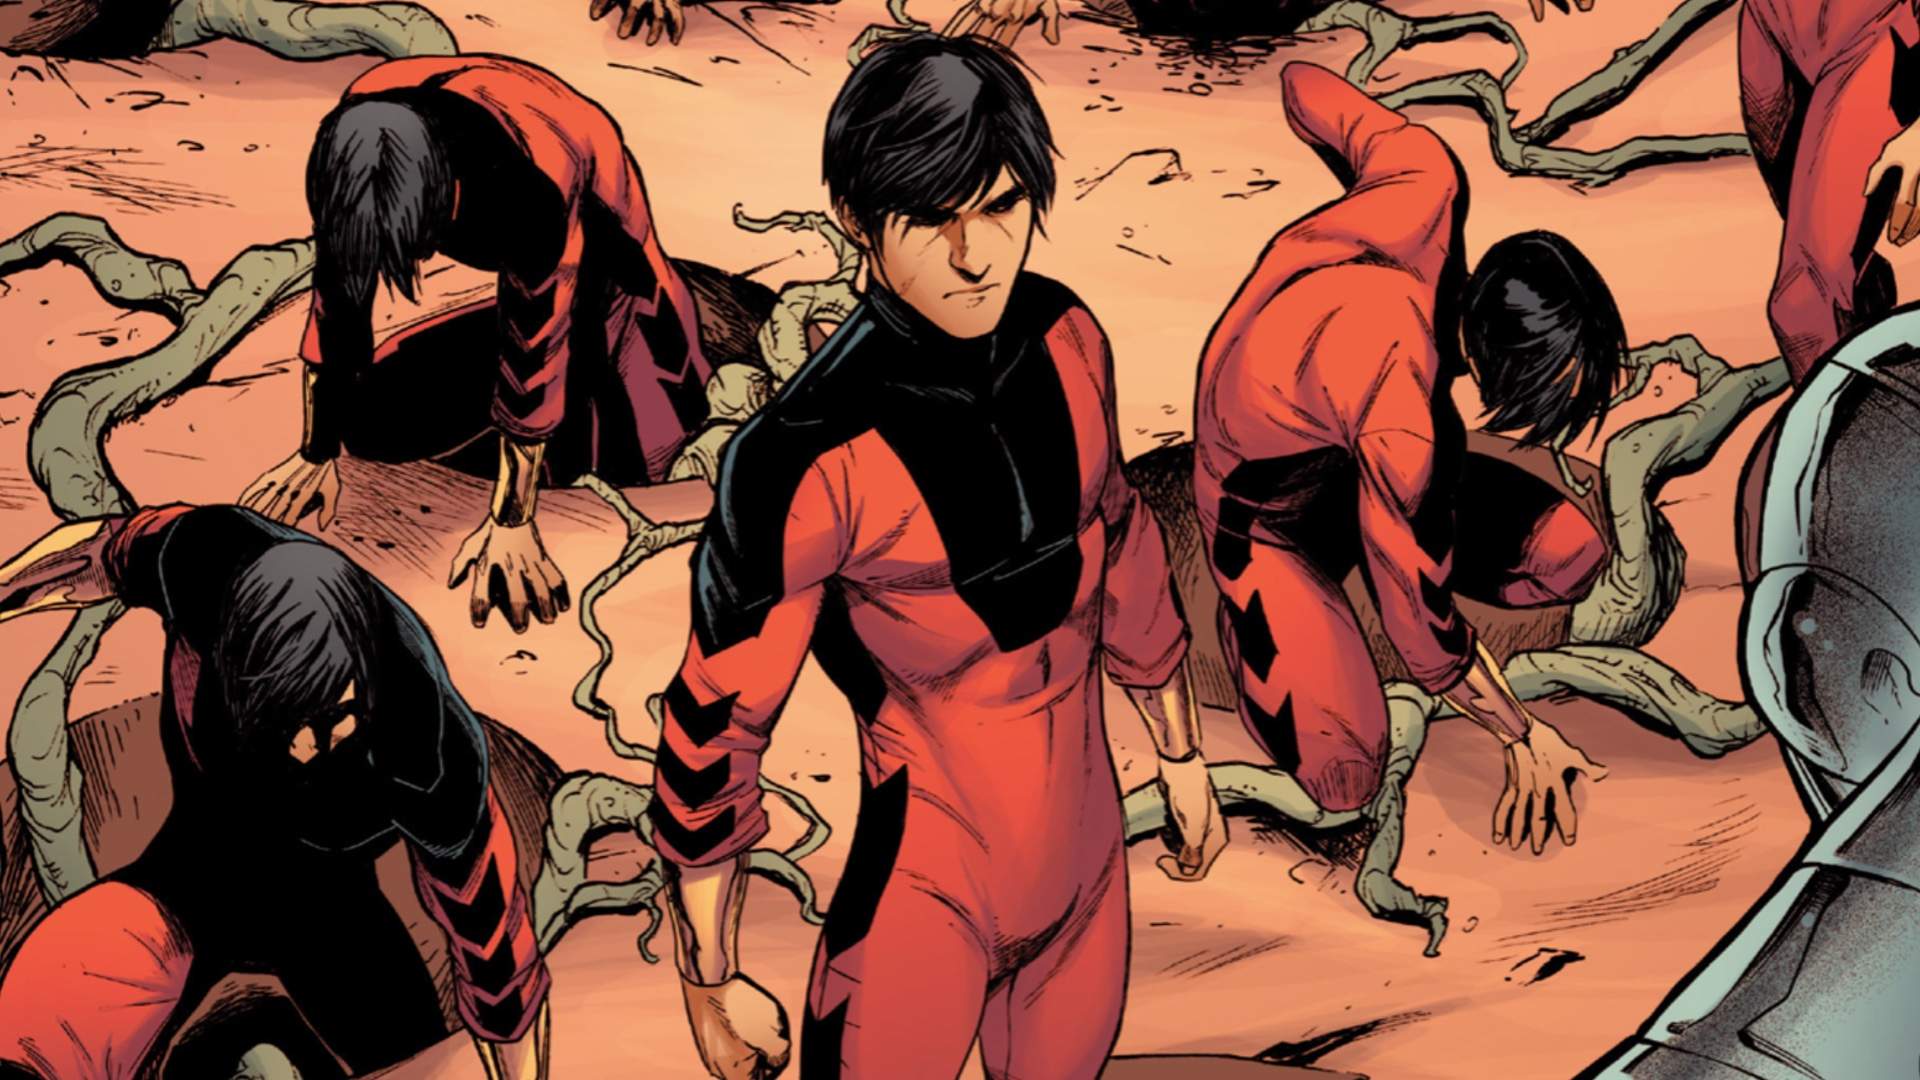 Marvel's Shang Chi: Ten Rings To Rule Of Geek